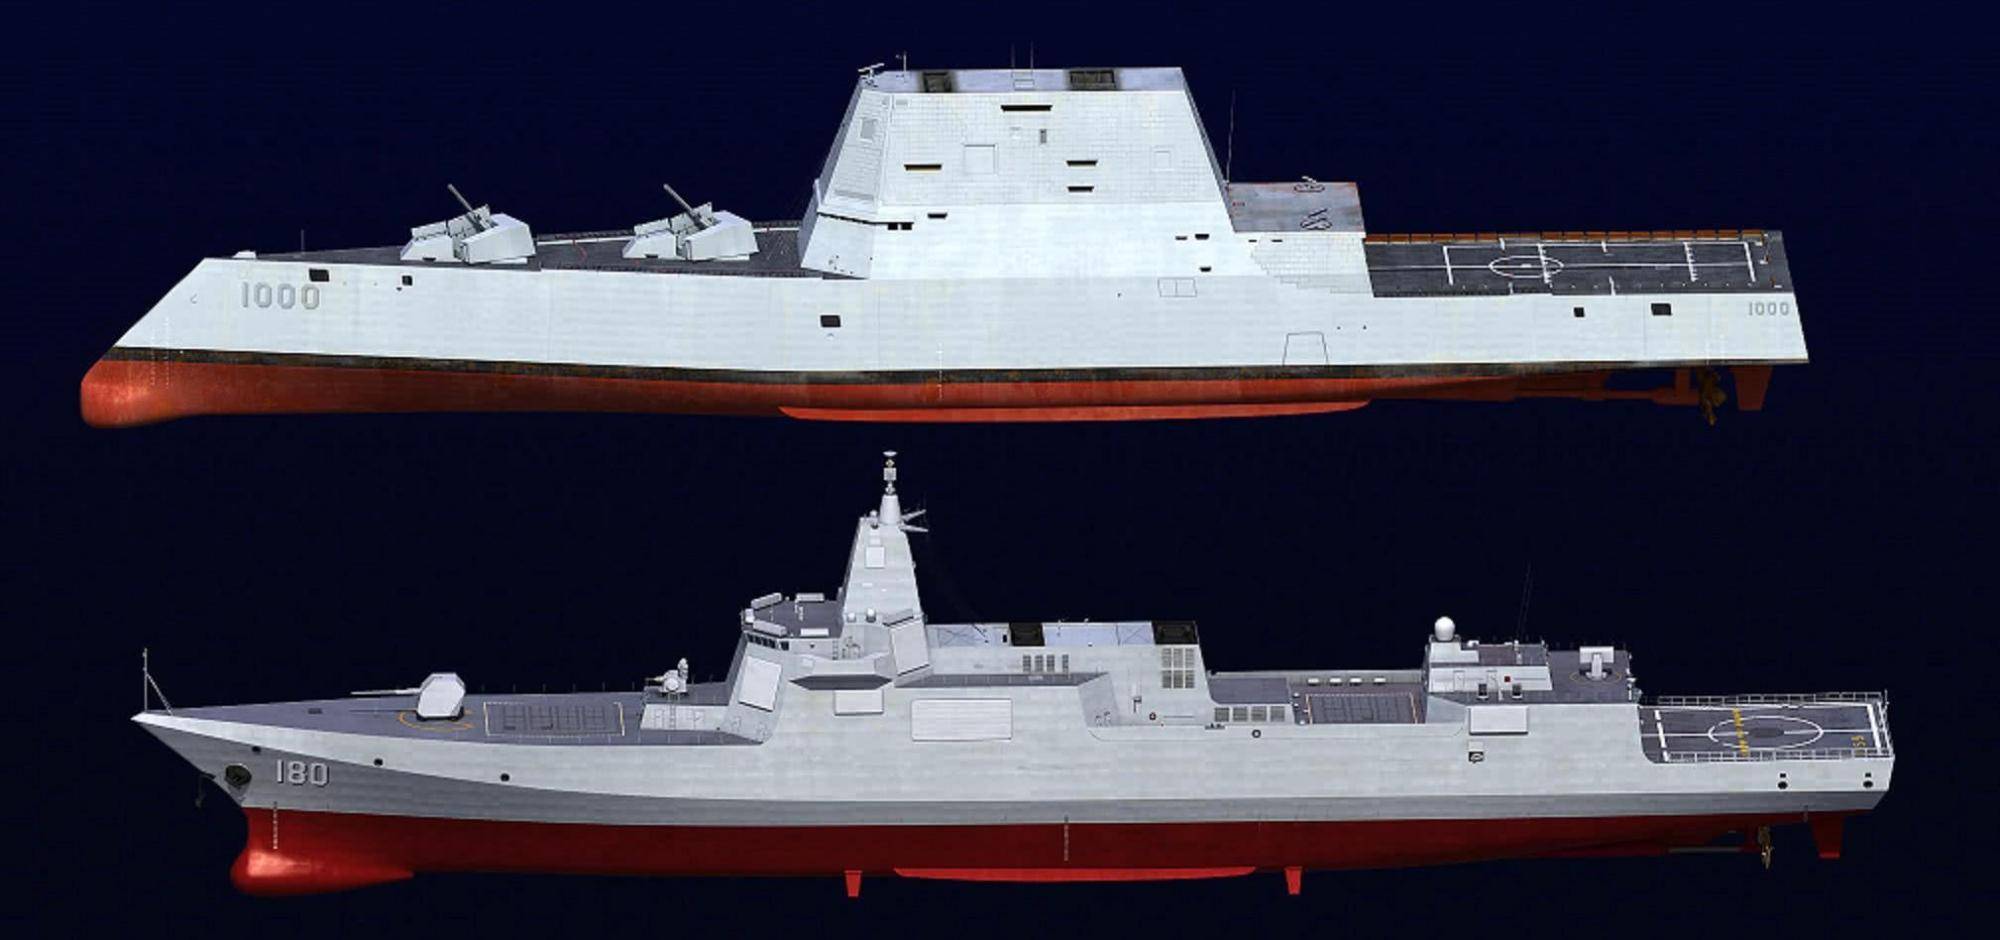 目前ddg(x)还处于设想阶段,但从目前披露的指标来看,美国新一代驱逐舰